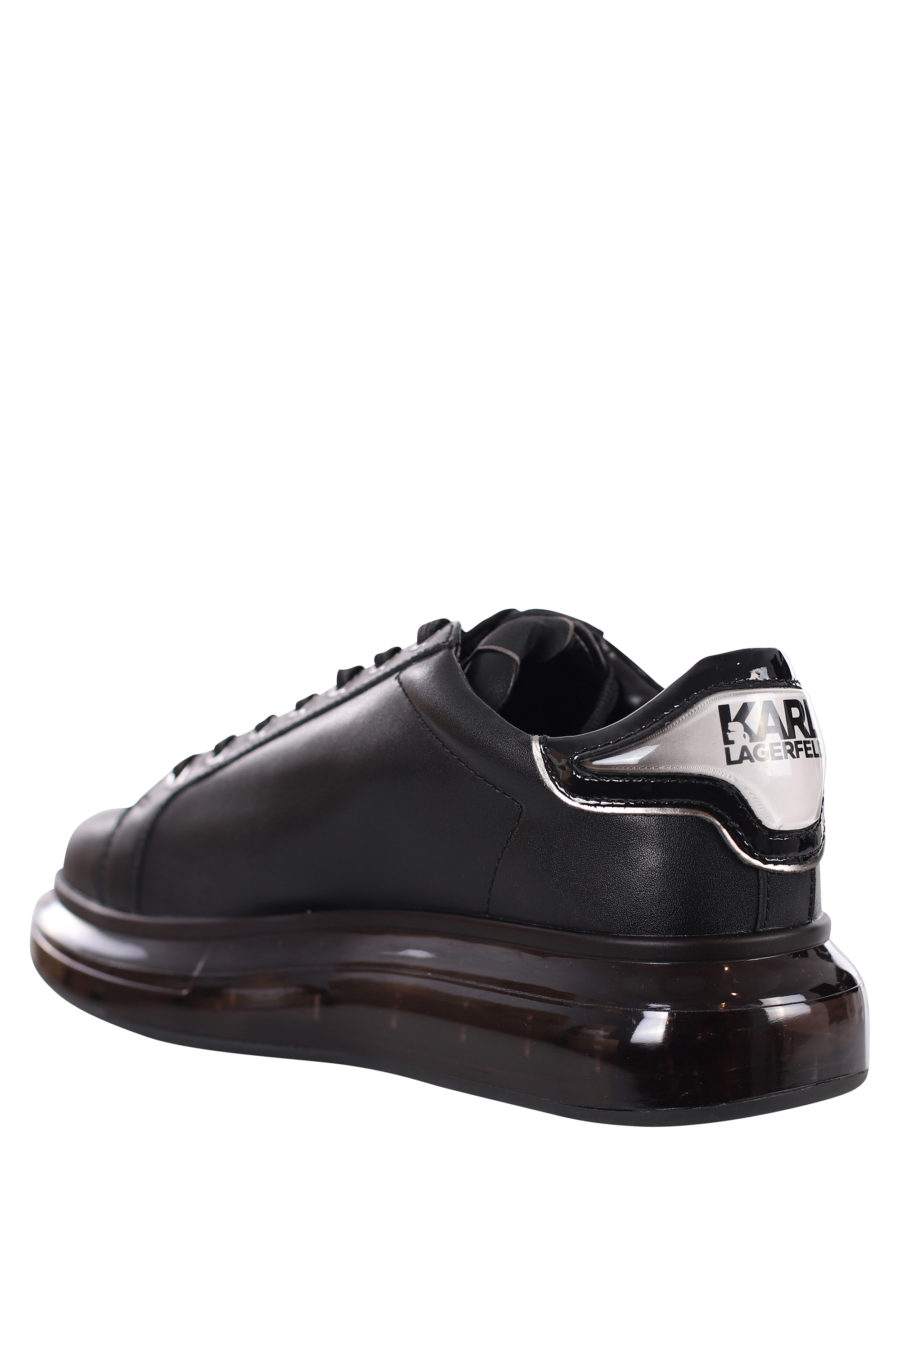 Zapatillas negras con logo silueta negro y suela negra - IMG 0417